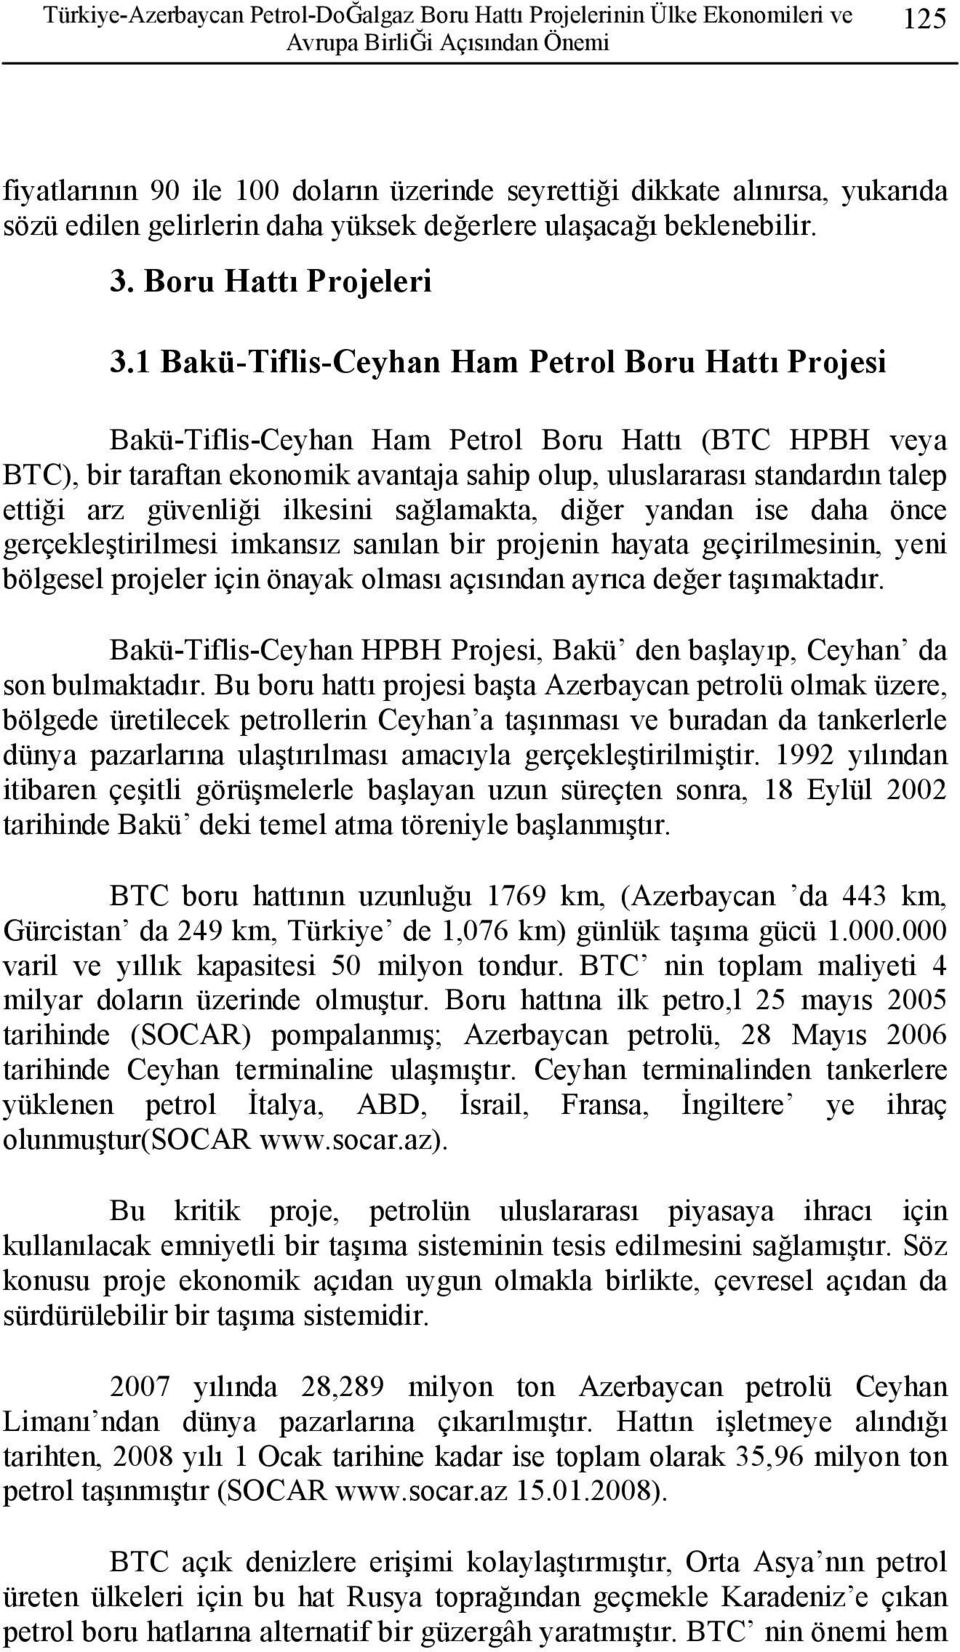 1 Bakü-Tiflis-Ceyhan Ham Petrol Boru Hattı Projesi Bakü-Tiflis-Ceyhan Ham Petrol Boru Hattı (BTC HPBH veya BTC), bir taraftan ekonomik avantaja sahip olup, uluslararası standardın talep ettiği arz